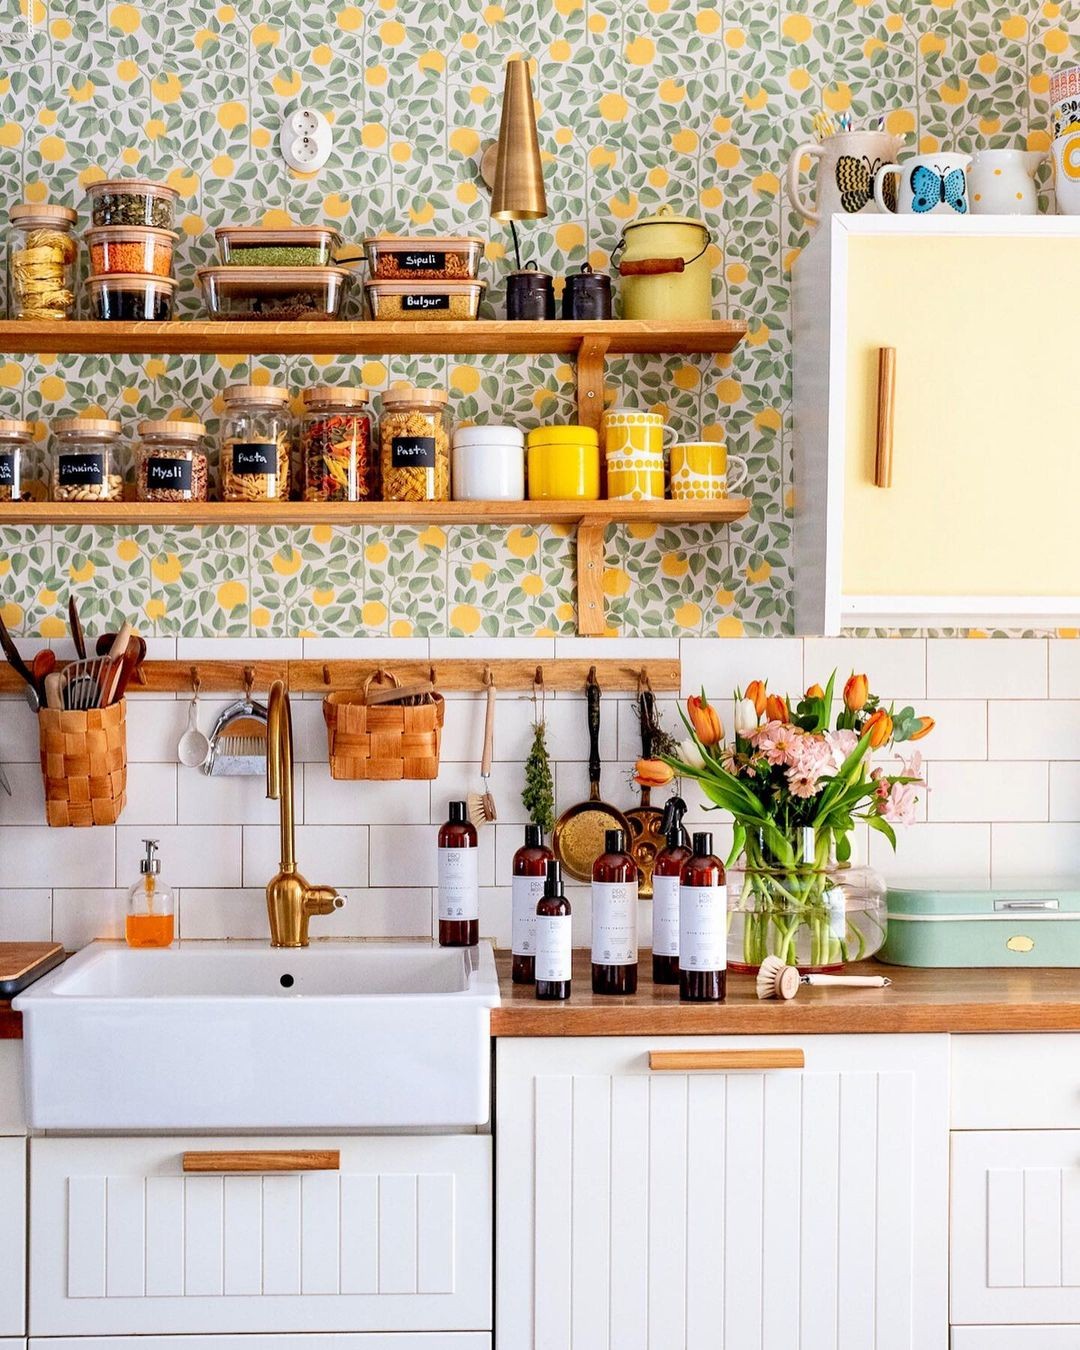 Décor do dia: cozinha com estilo vintage e papel de parede colorido (Foto: Divulgação)